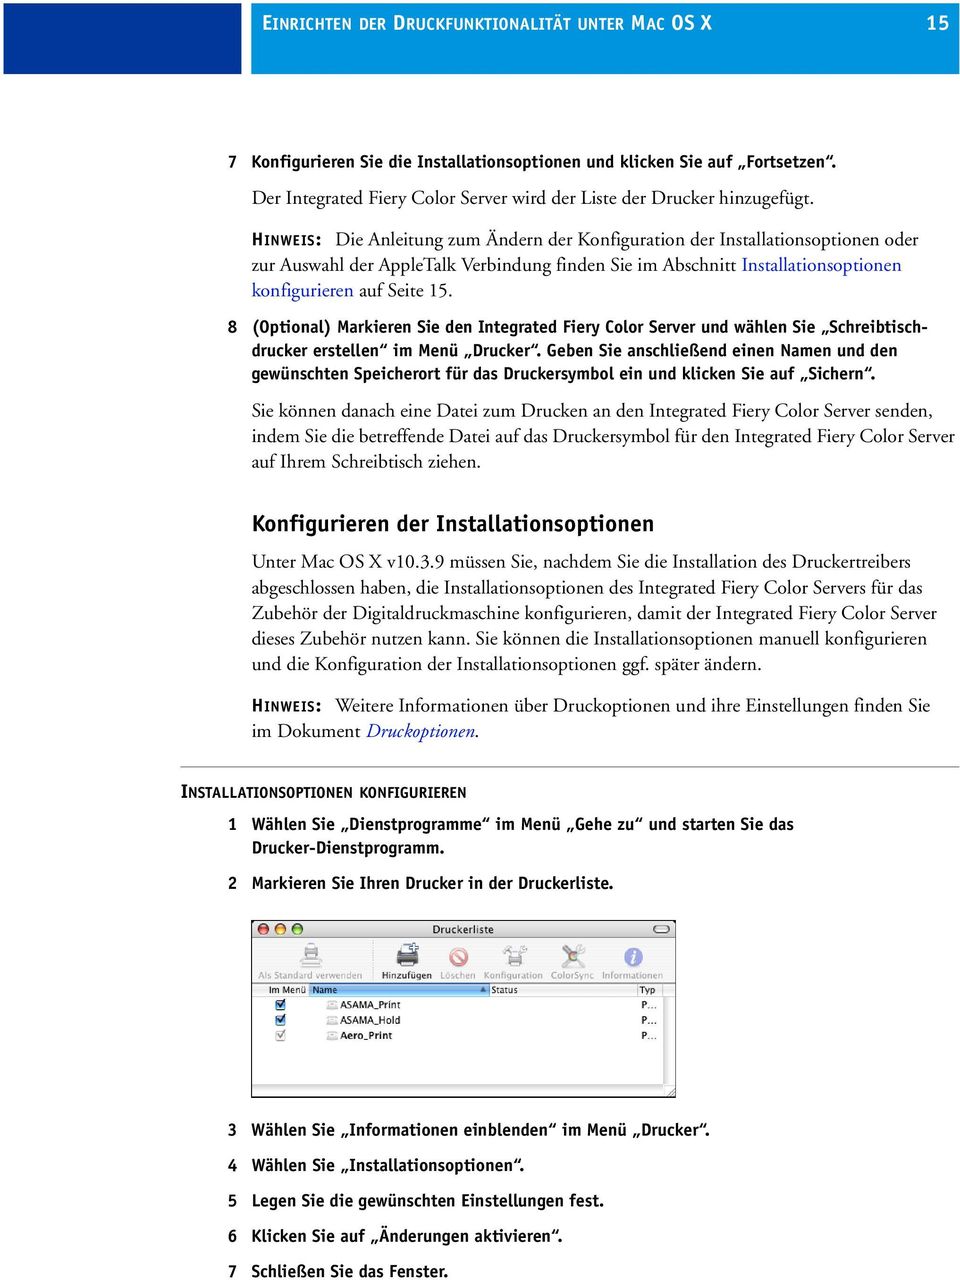 HINWEIS: Die Anleitung zum Ändern der Konfiguration der Installationsoptionen oder zur Auswahl der AppleTalk Verbindung finden Sie im Abschnitt Installationsoptionen konfigurieren auf Seite 15.